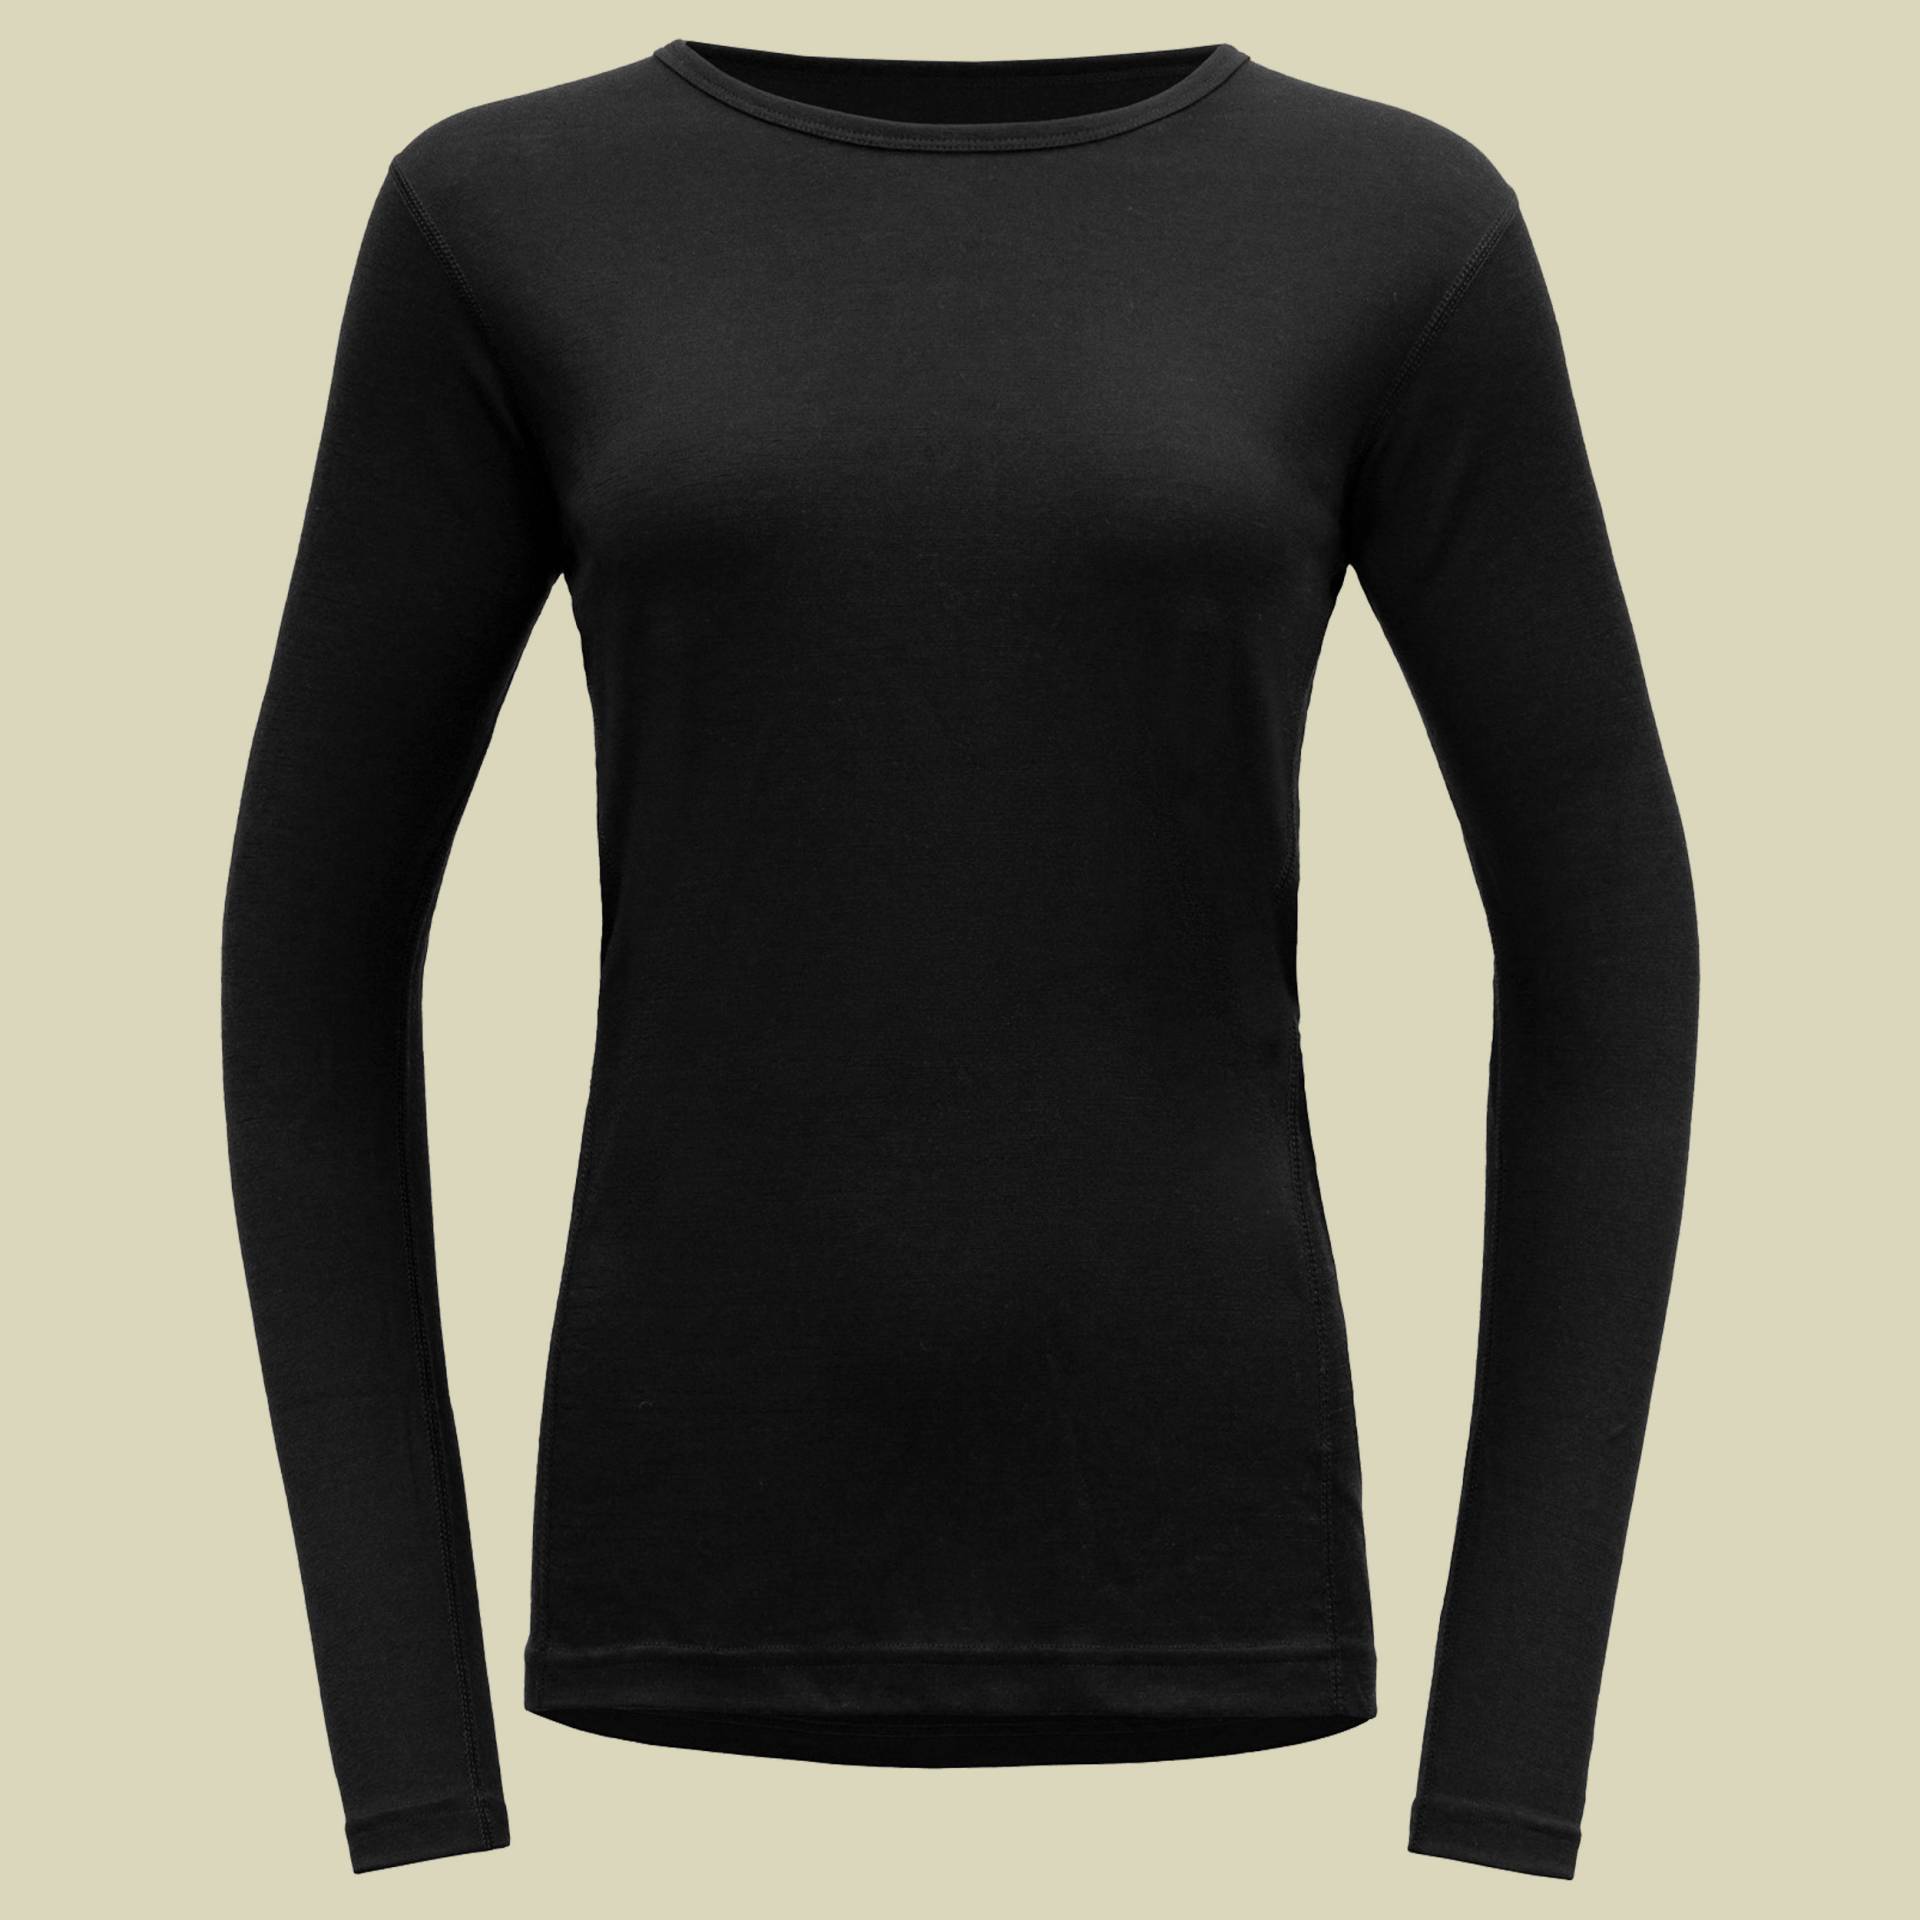 Jakta Merino 200 Shirt Woman Größe M  Farbe black von Devold